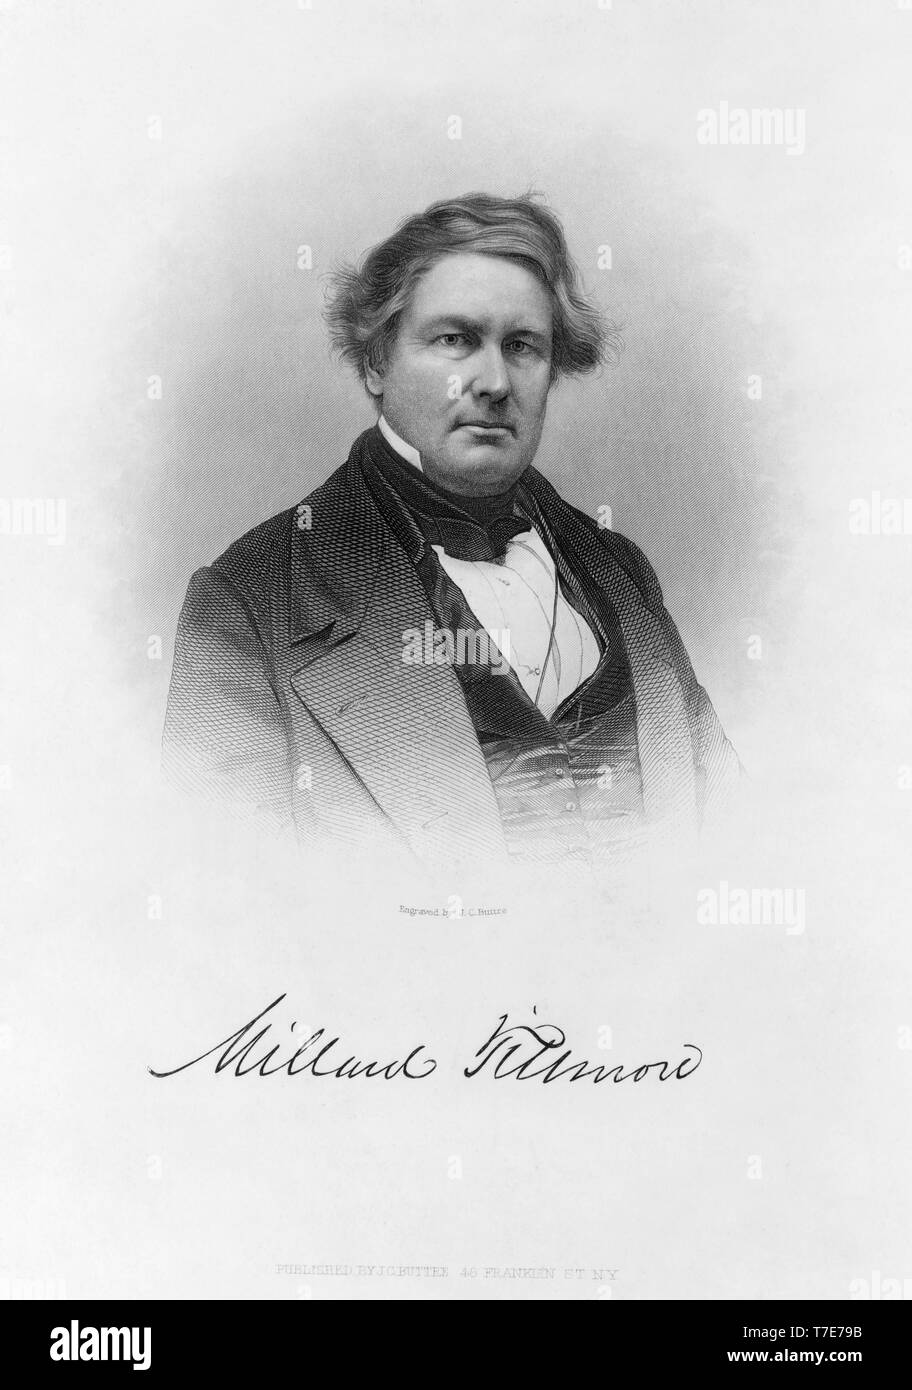 Millard Fillmore (1800-74), 13. Präsident der Vereinigten Staaten, graviert und veröffentlicht durch J.C. Buttre, 1877 Stockfoto